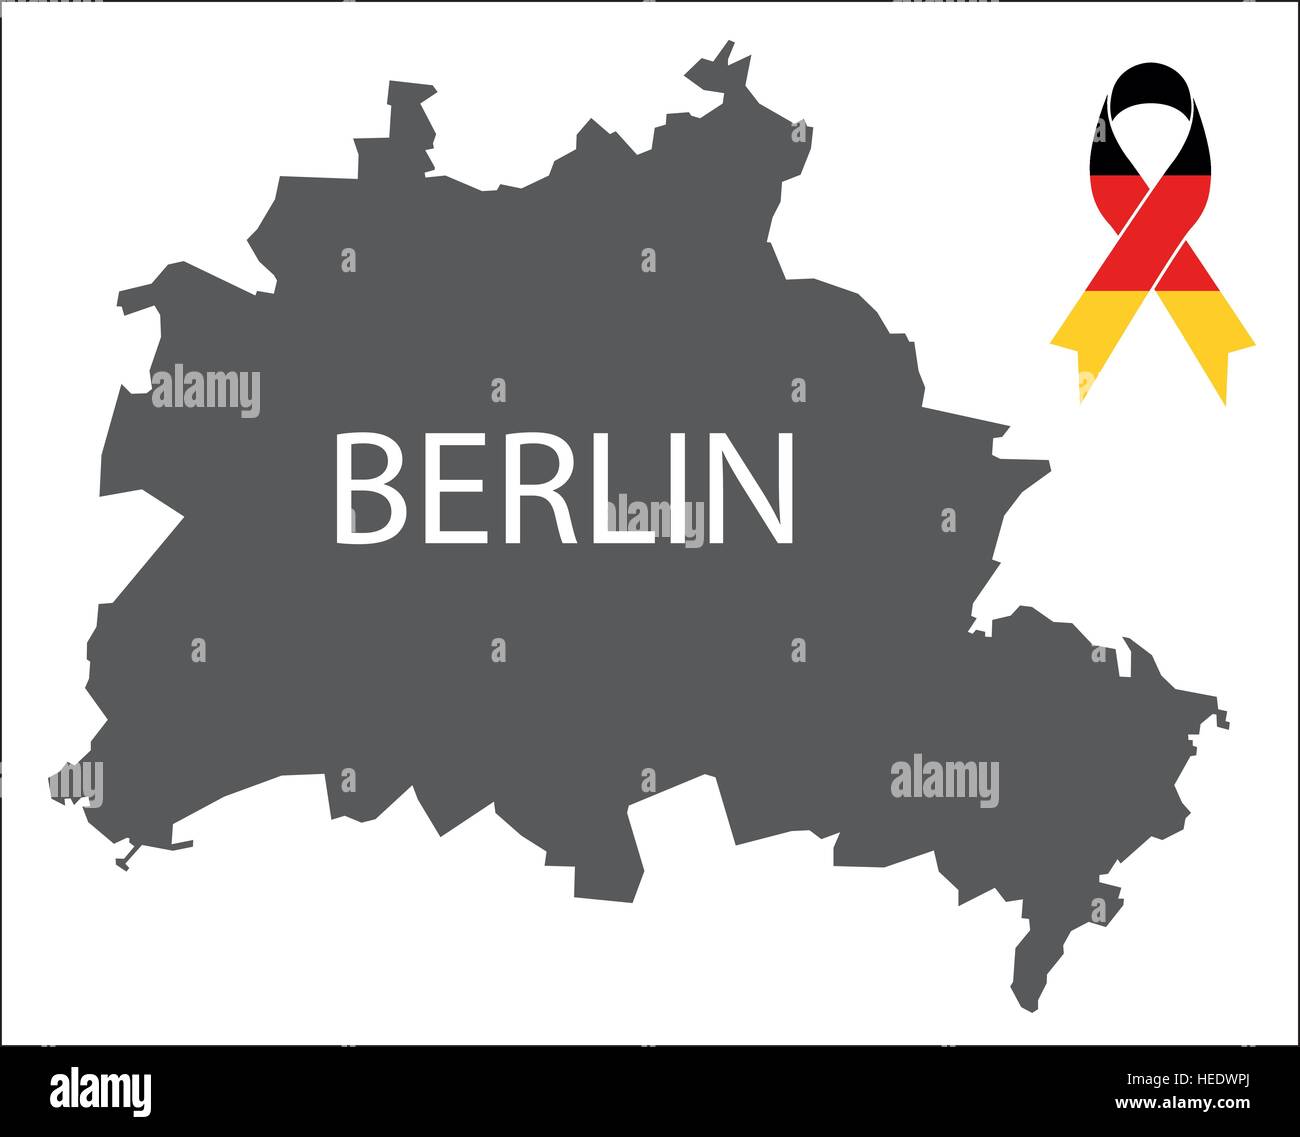 Berlin Beileid Karte mit Band in deutschen Nationalfarben Stock Vektor